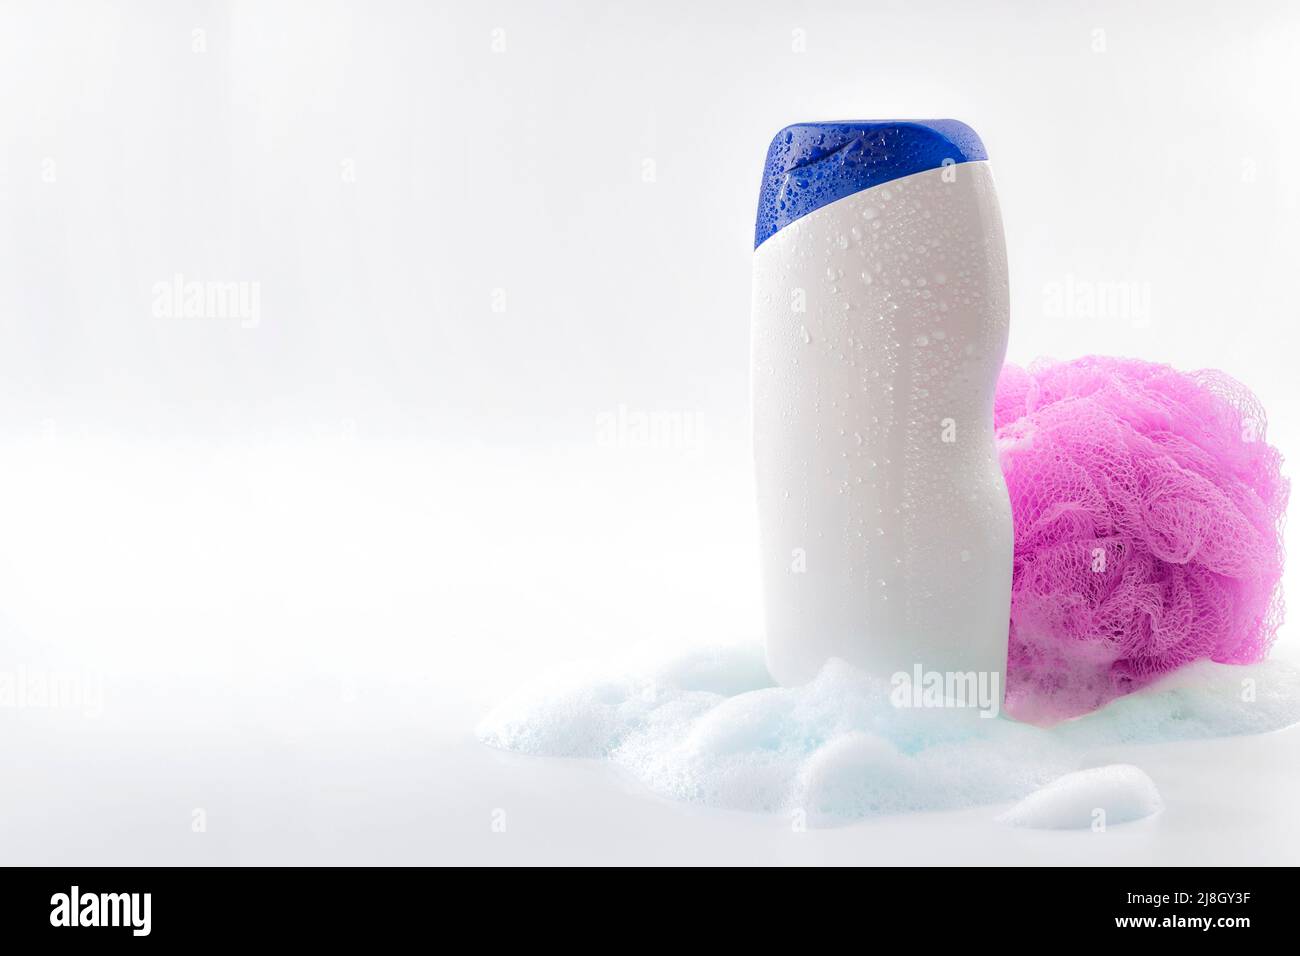 Higiene personal y cuidado del cuerpo artículos de tocador tema concepto con una botella de gel de ducha empapado en gotas de agua, burbujas hechas por espuma de jabón y ducha de color rosa Foto de stock